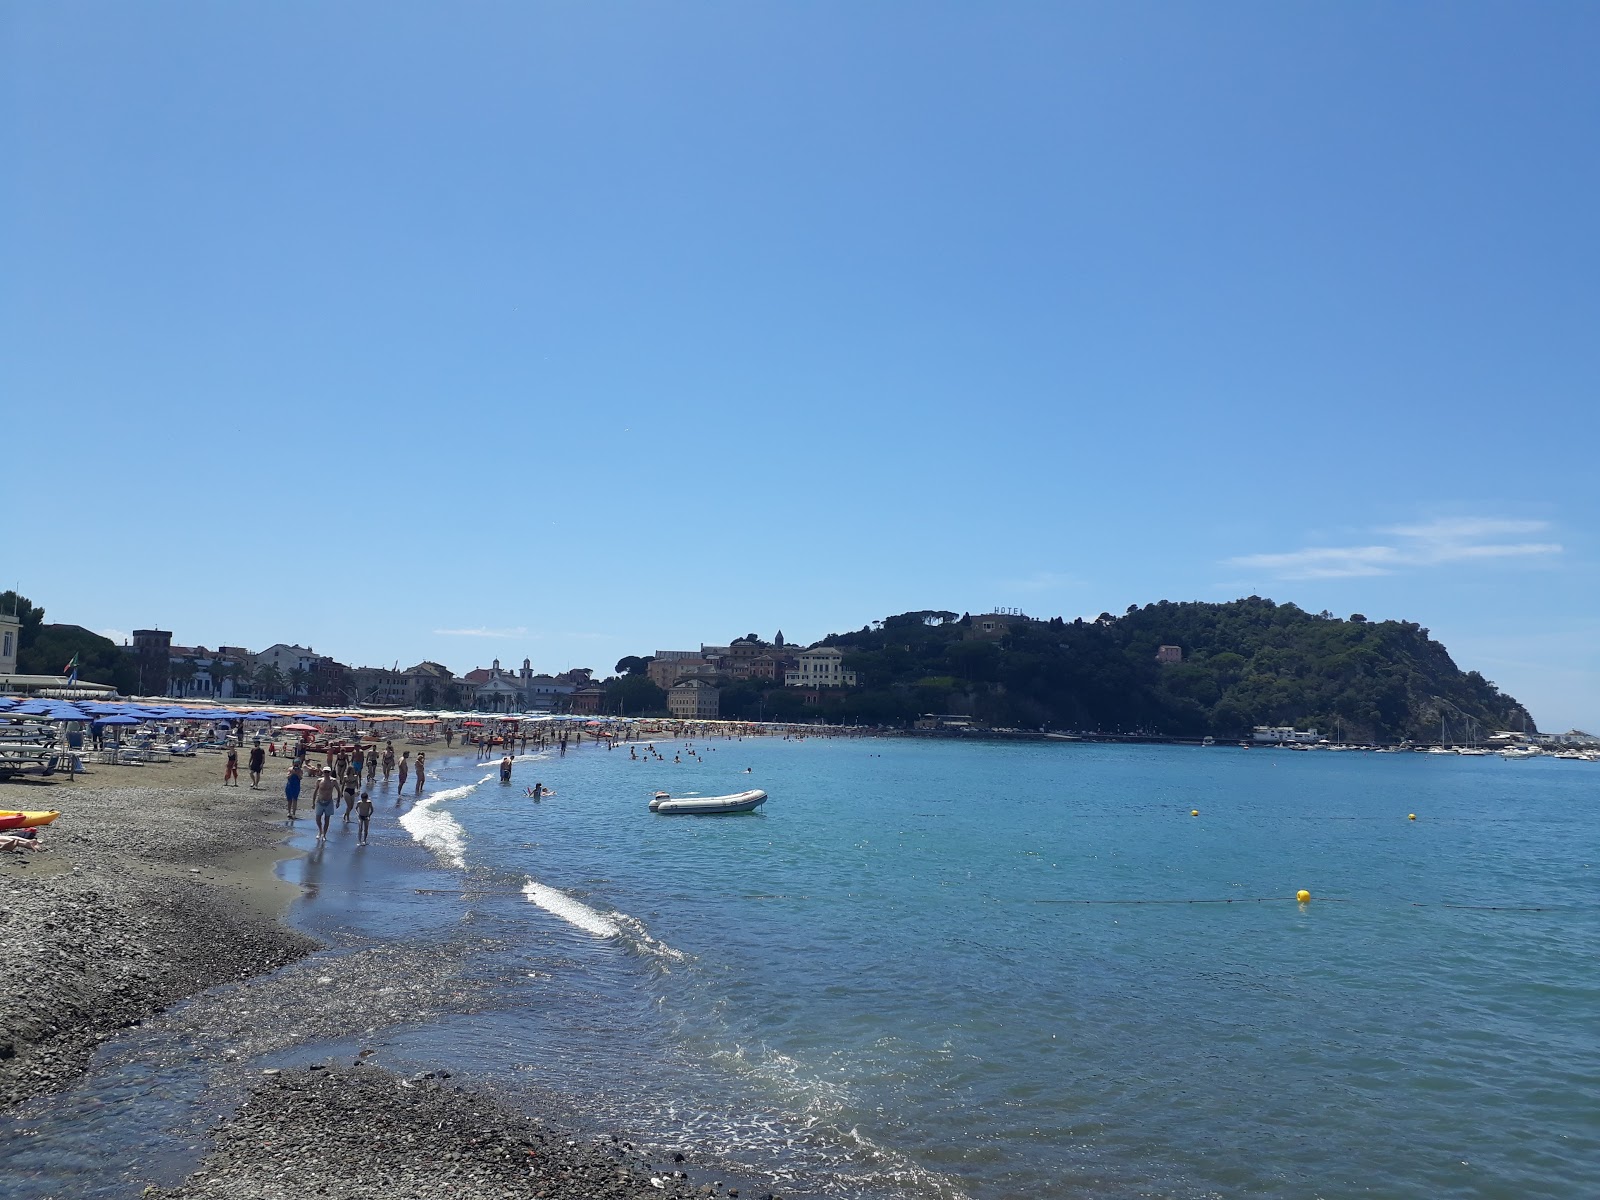 Foto af Spiaggia per cani - populært sted blandt afslapningskendere